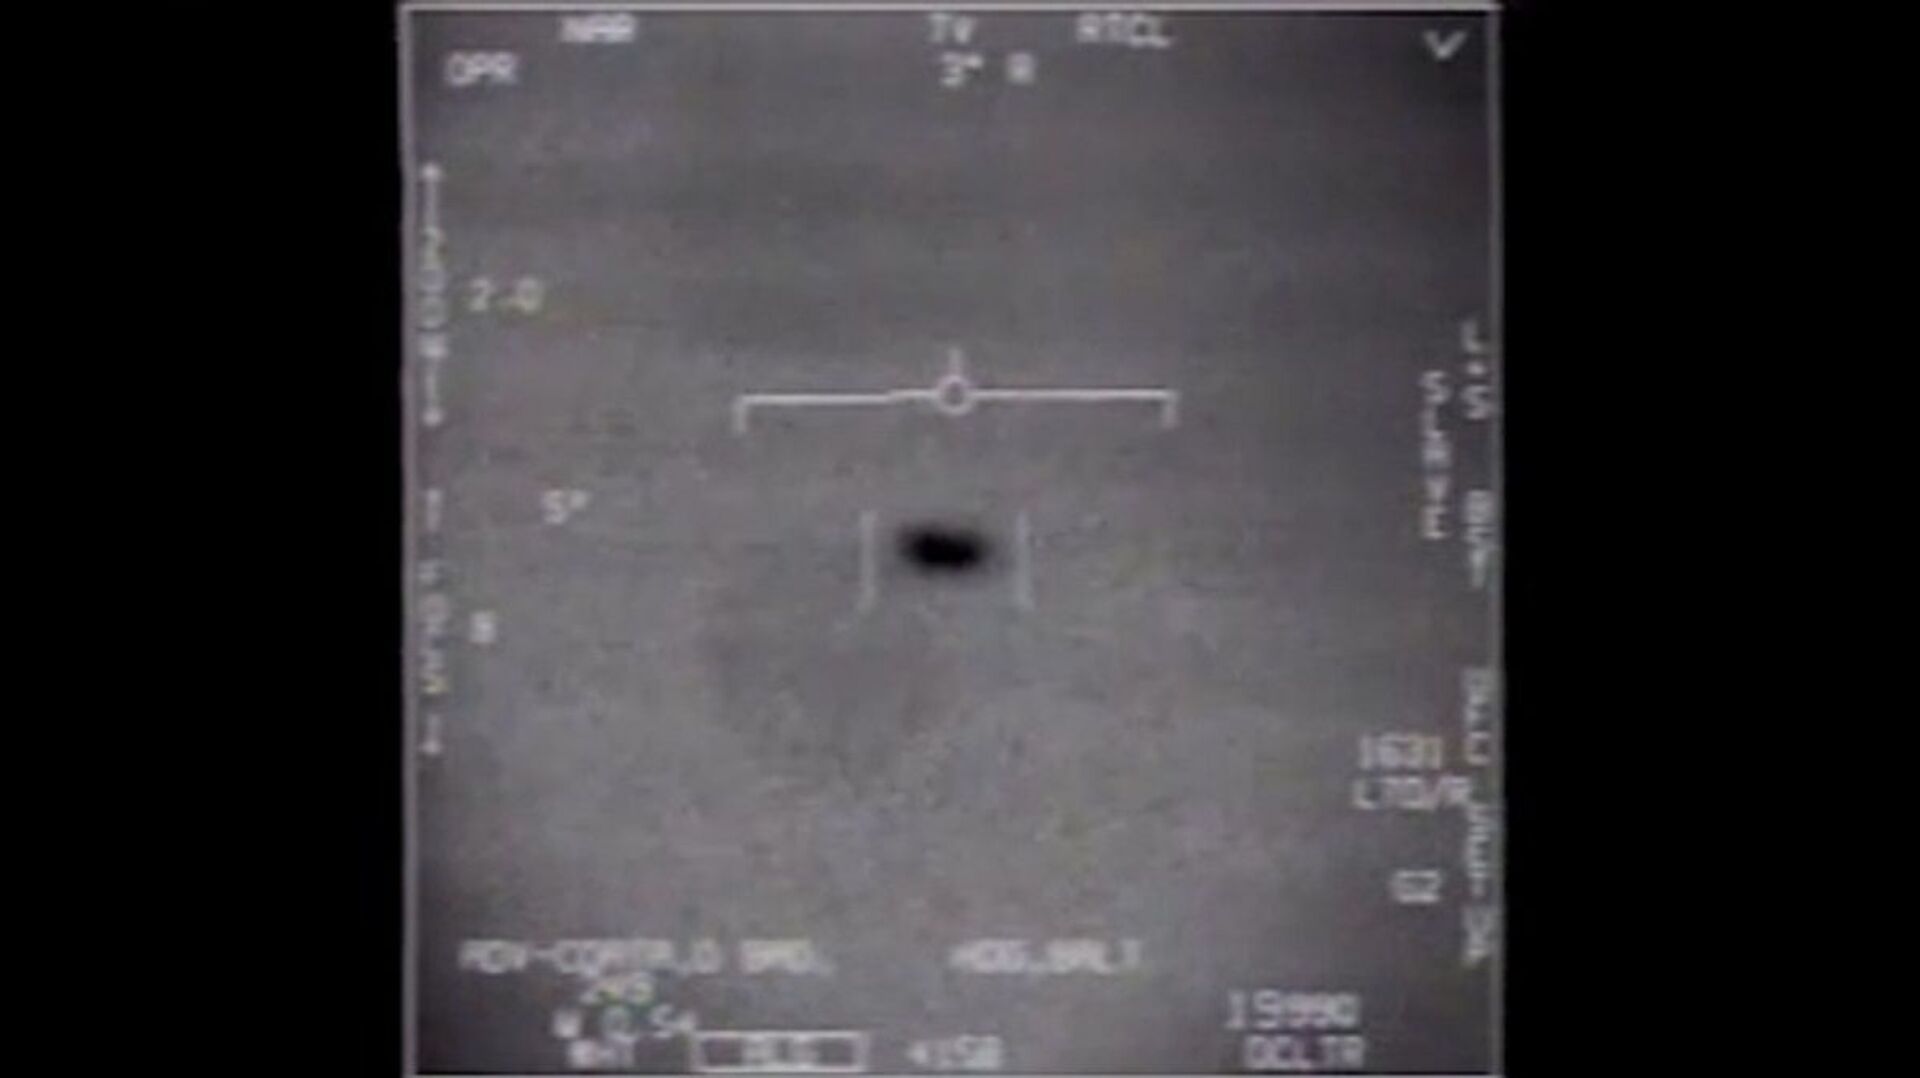 Pentagon UFO Report Ignites Concerns Over Possible ‘Challenge to US National Security’ - Sputnik International, 1920, 26.06.2021